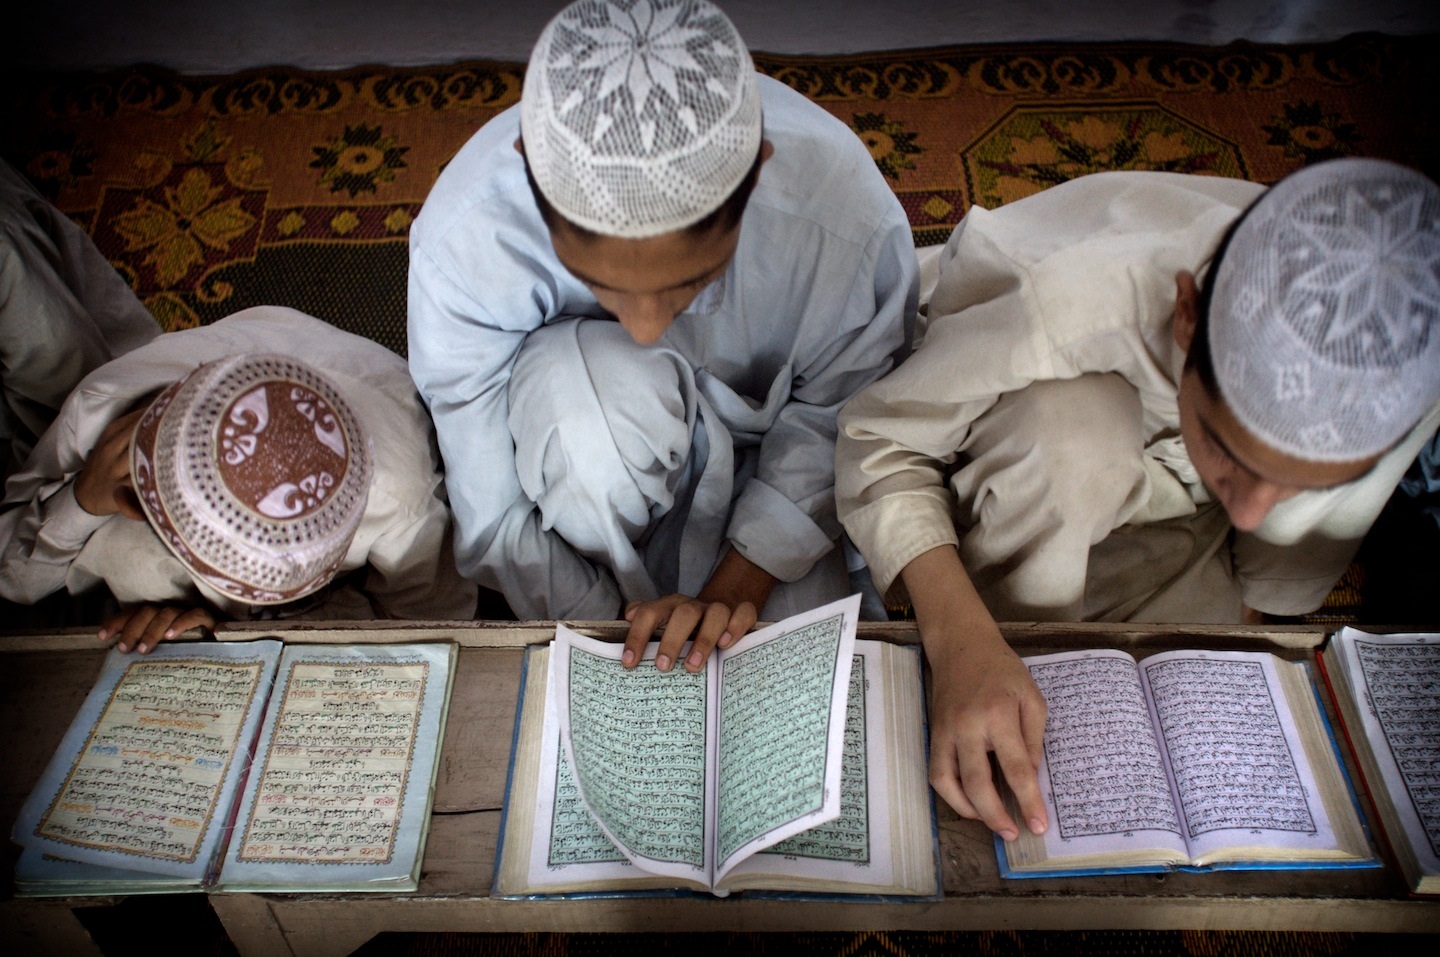 Узбекистан борется с незаконным обучением детей религии